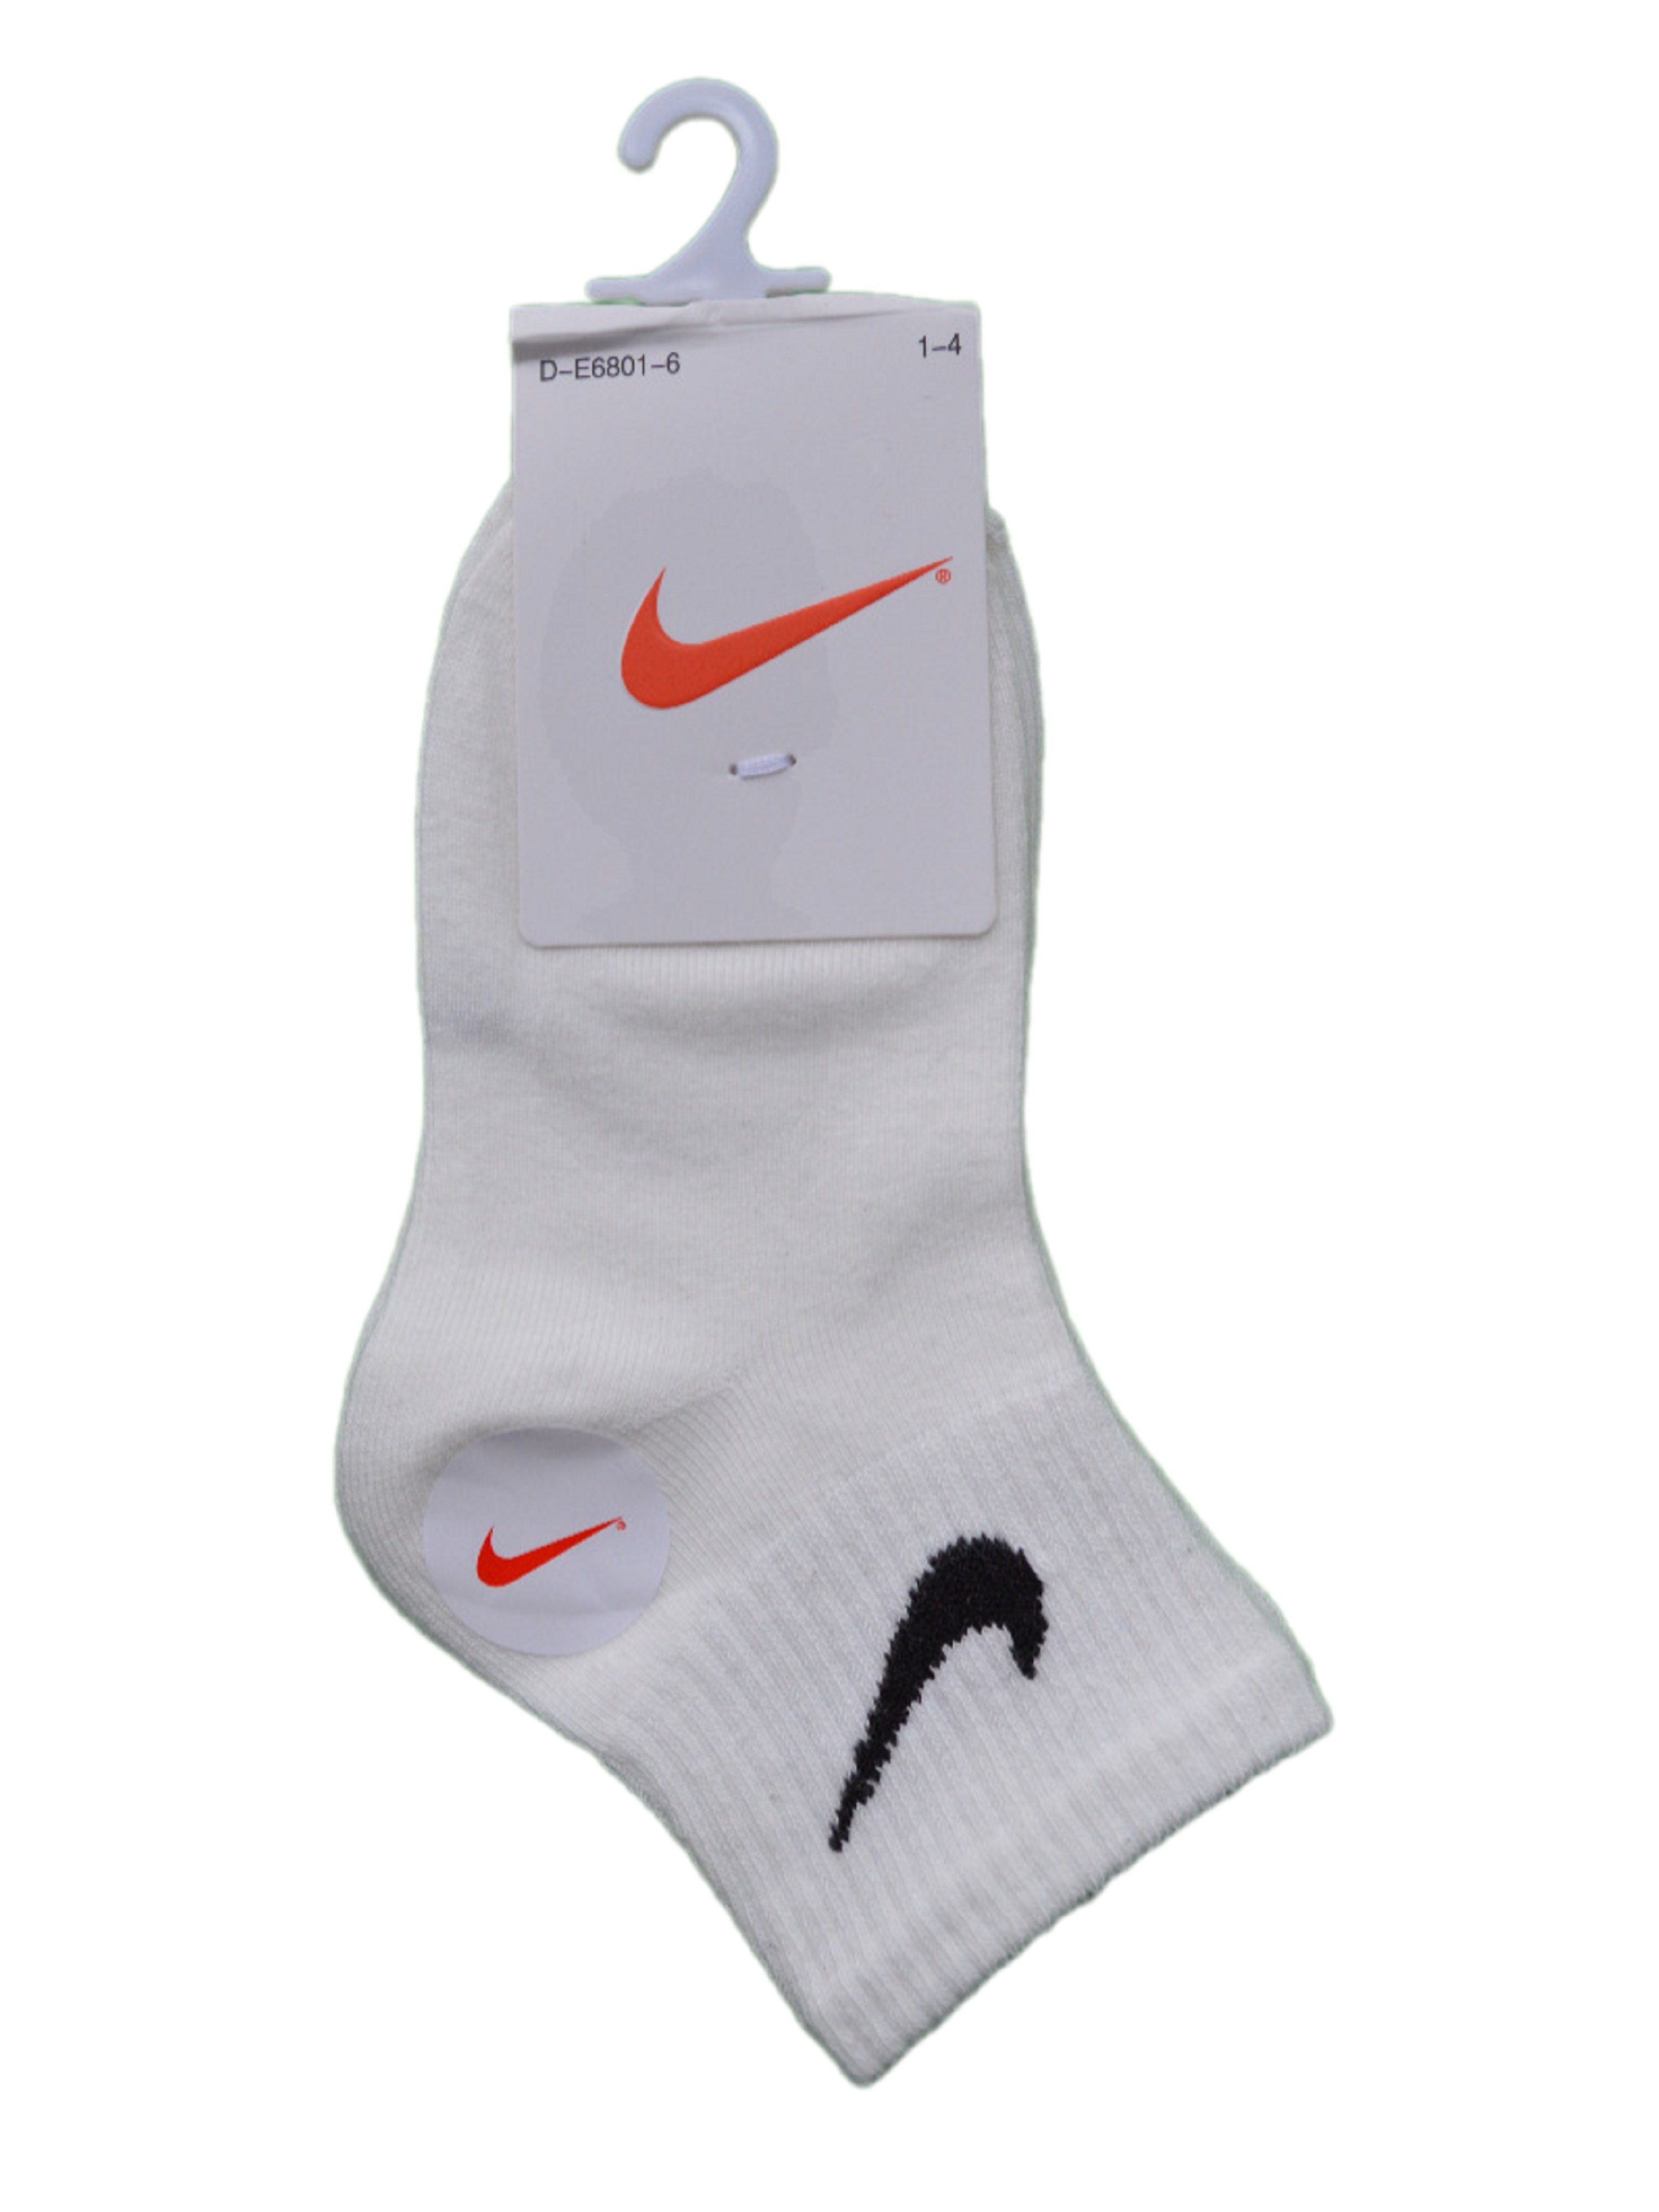 Носки детские Nike Ni-D-E6801-6, белый, 6 шлепанцы детские nike kawa slide gs ps синий